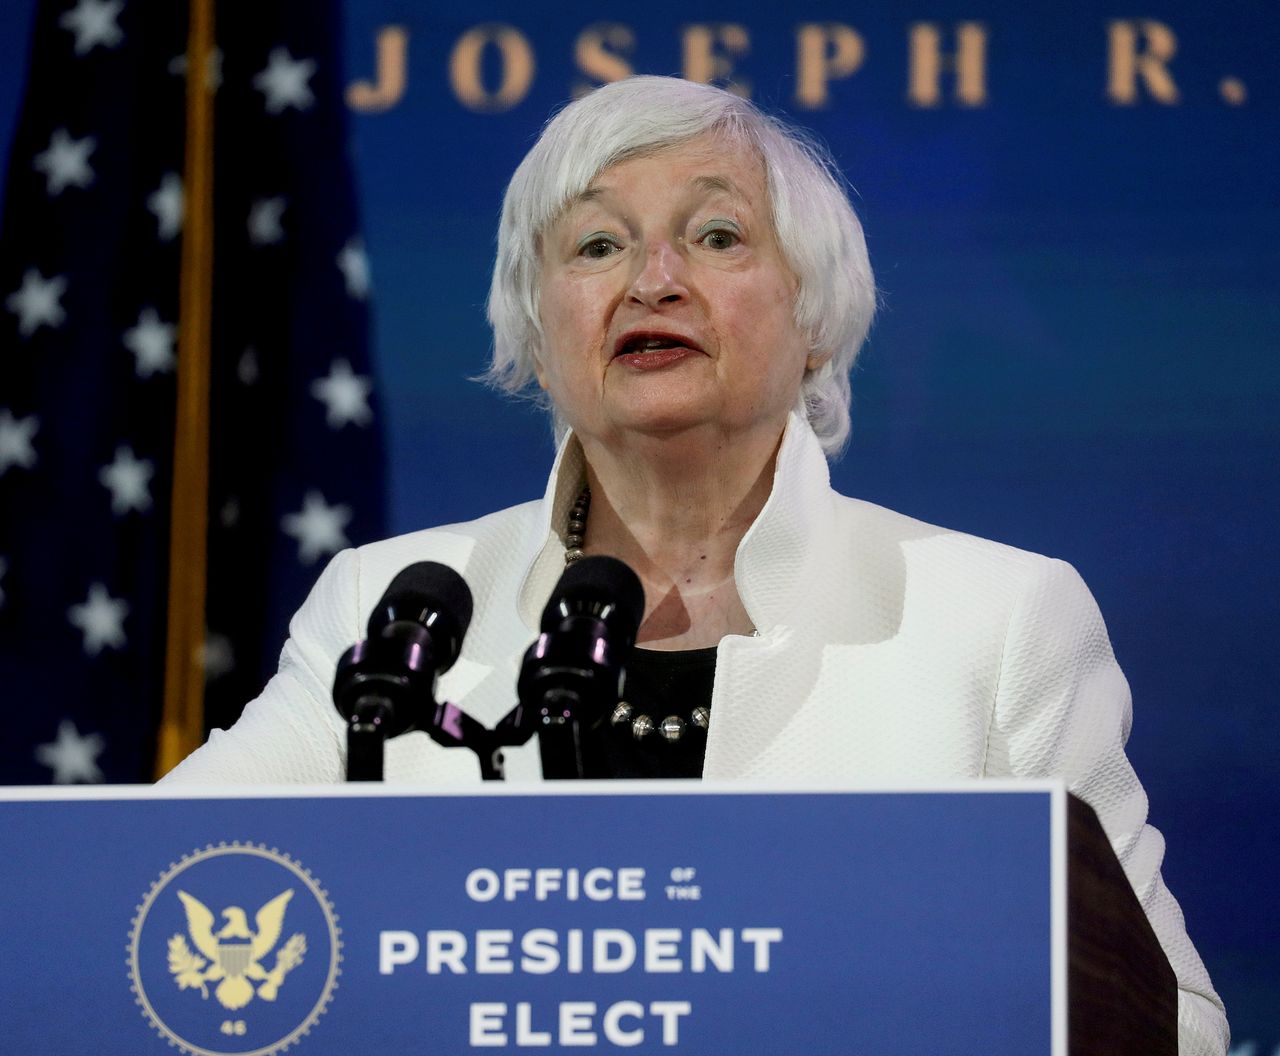 FOTO DE ARCHIVO: La secretaria del Tesoro de Estados Unidos, Janet Yellen, en Wilmington, Delaware, Estados Unidos, 1 de diciembre de 2020.REUTERS/Leah Millis/File Photo